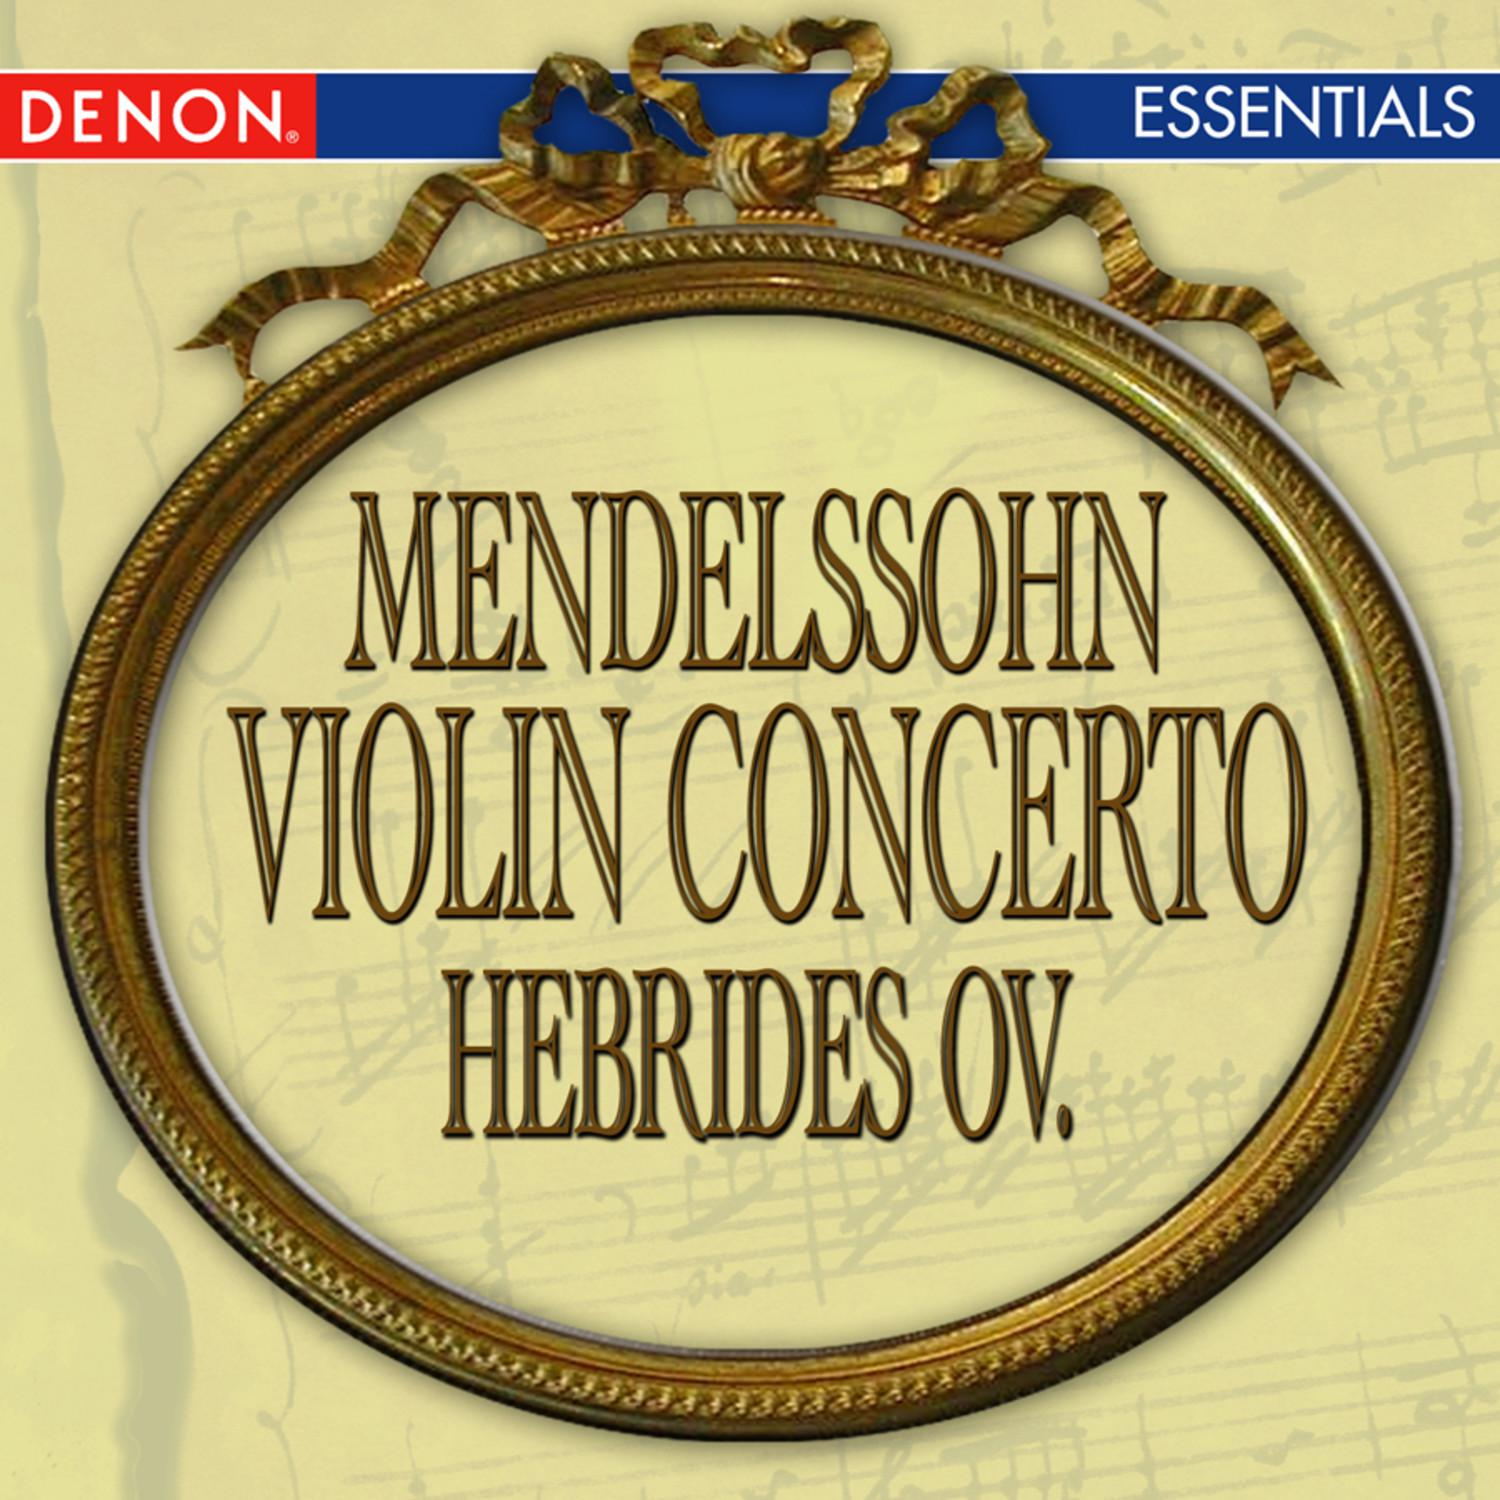 Concerto for Violin and Orchestra in E Minor, Op. 64: III. Allegretto non troppo  Allegro molto vivace